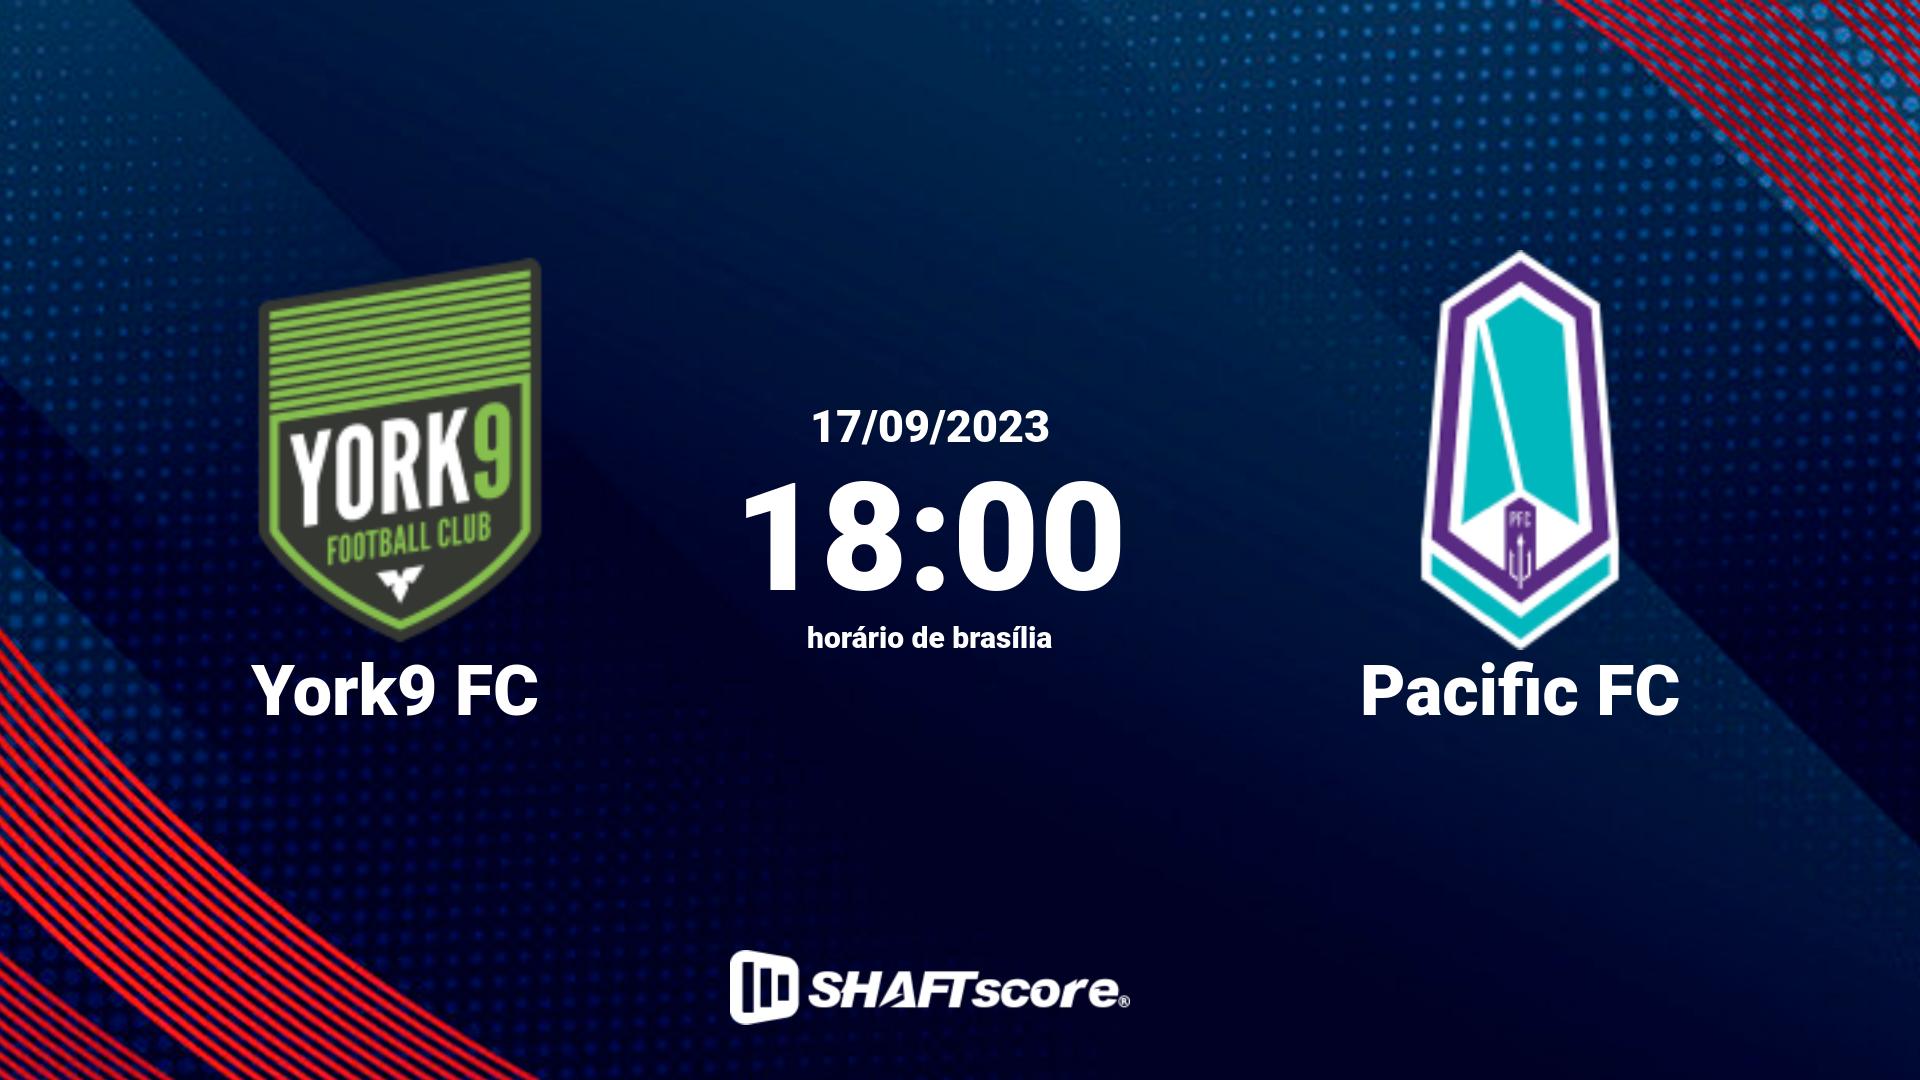 Estatísticas do jogo York9 FC vs Pacific FC 17.09 18:00